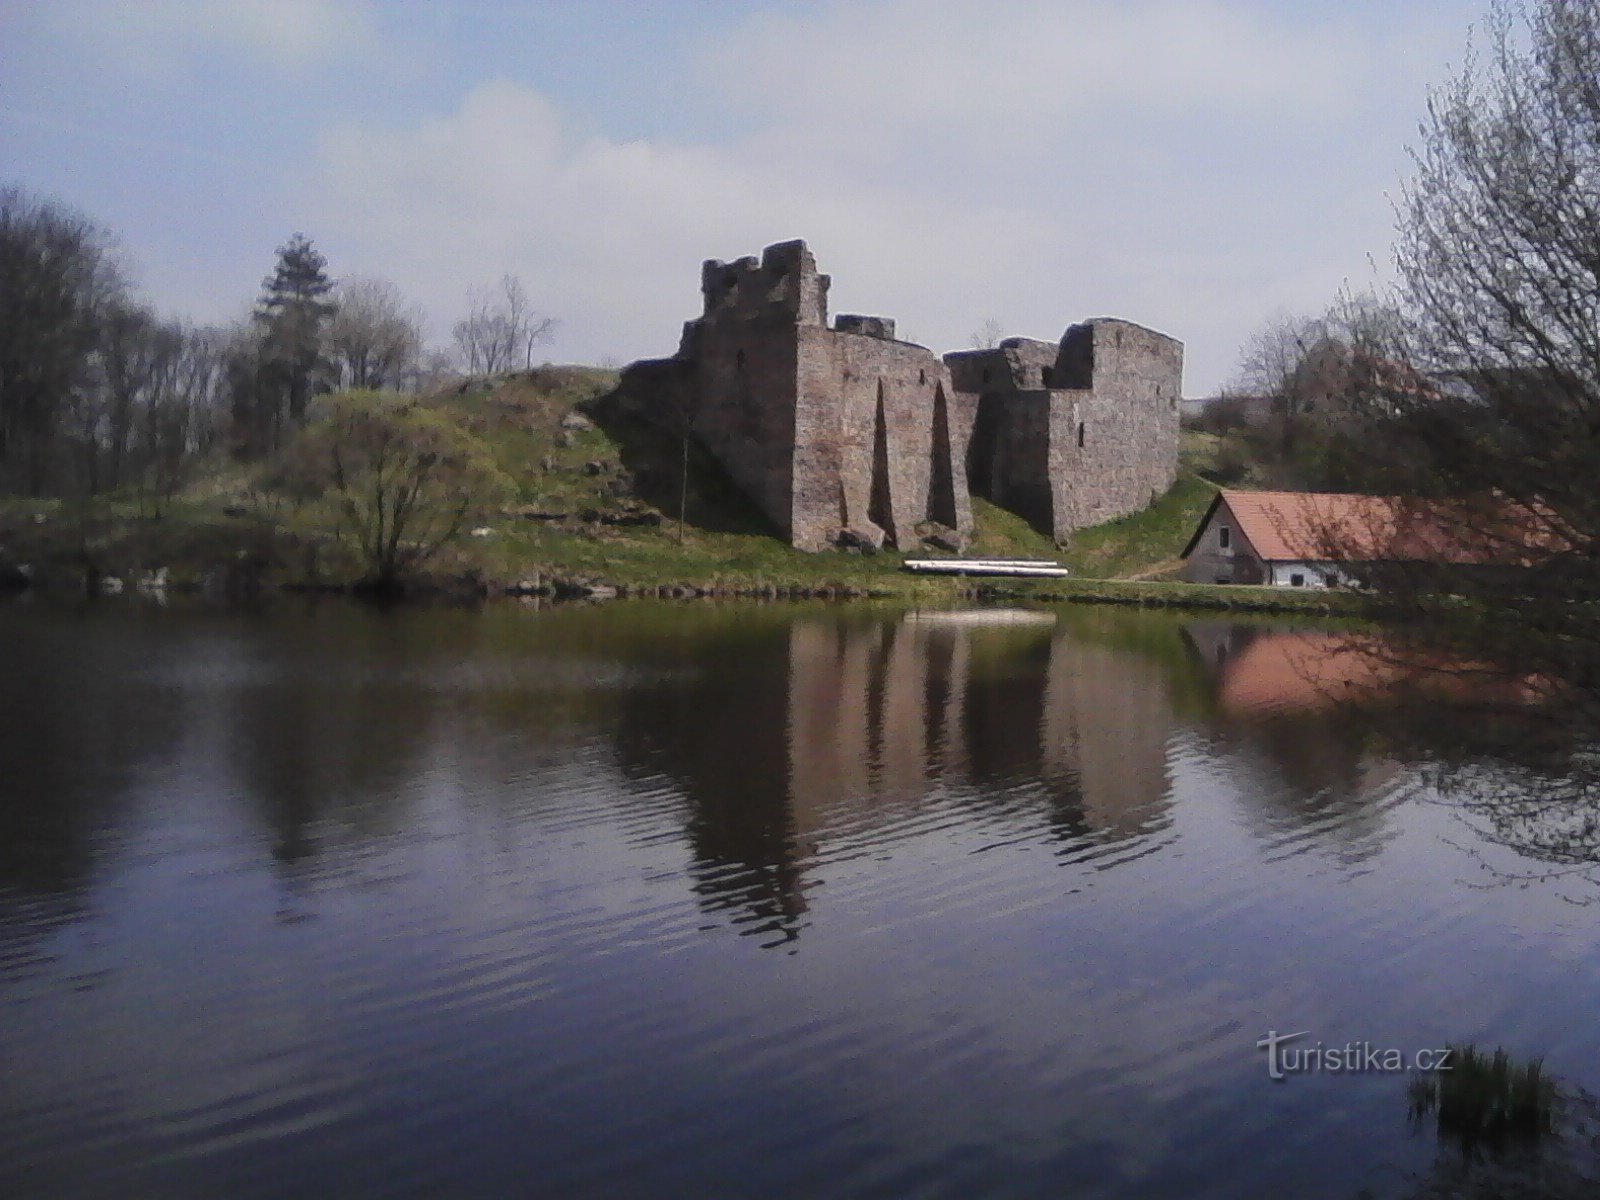 1. Zbytky hradu se zhlížejí na hladině rybníka.